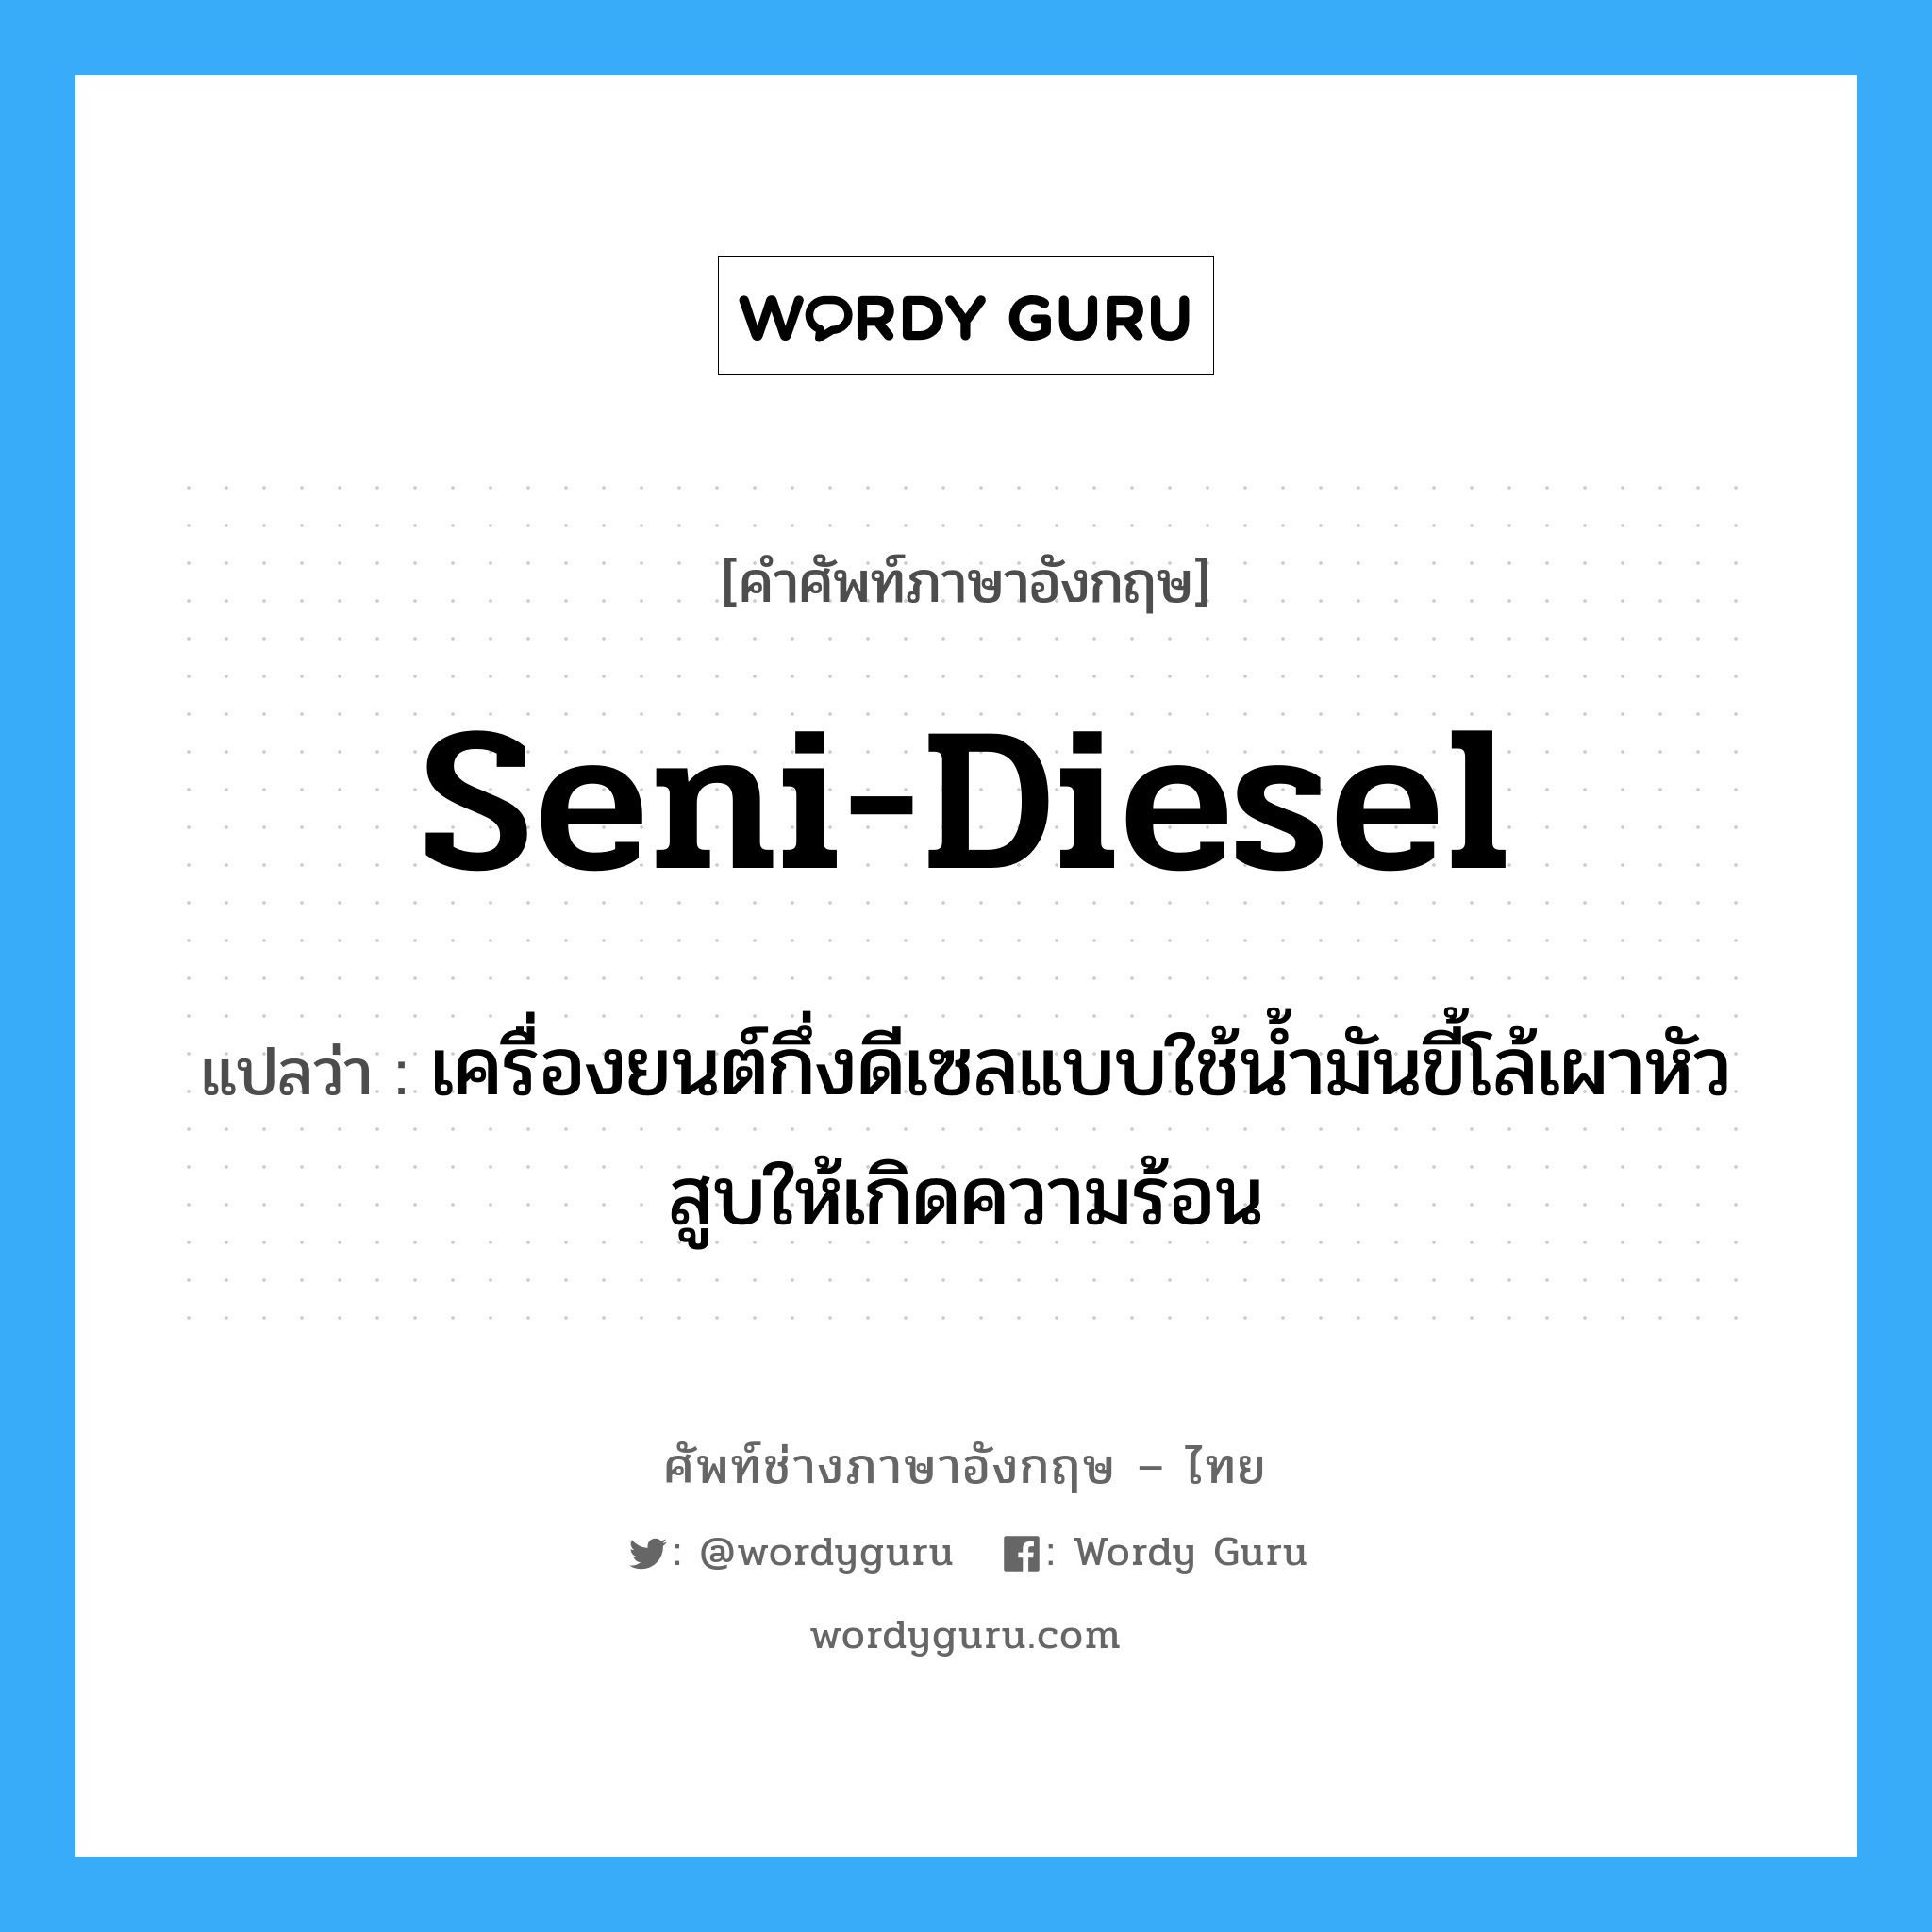 seni-diesel แปลว่า?, คำศัพท์ช่างภาษาอังกฤษ - ไทย seni-diesel คำศัพท์ภาษาอังกฤษ seni-diesel แปลว่า เครื่องยนต์กึ่งดีเซลแบบใช้น้ำมันขี้โล้เผาหัวสูบให้เกิดความร้อน